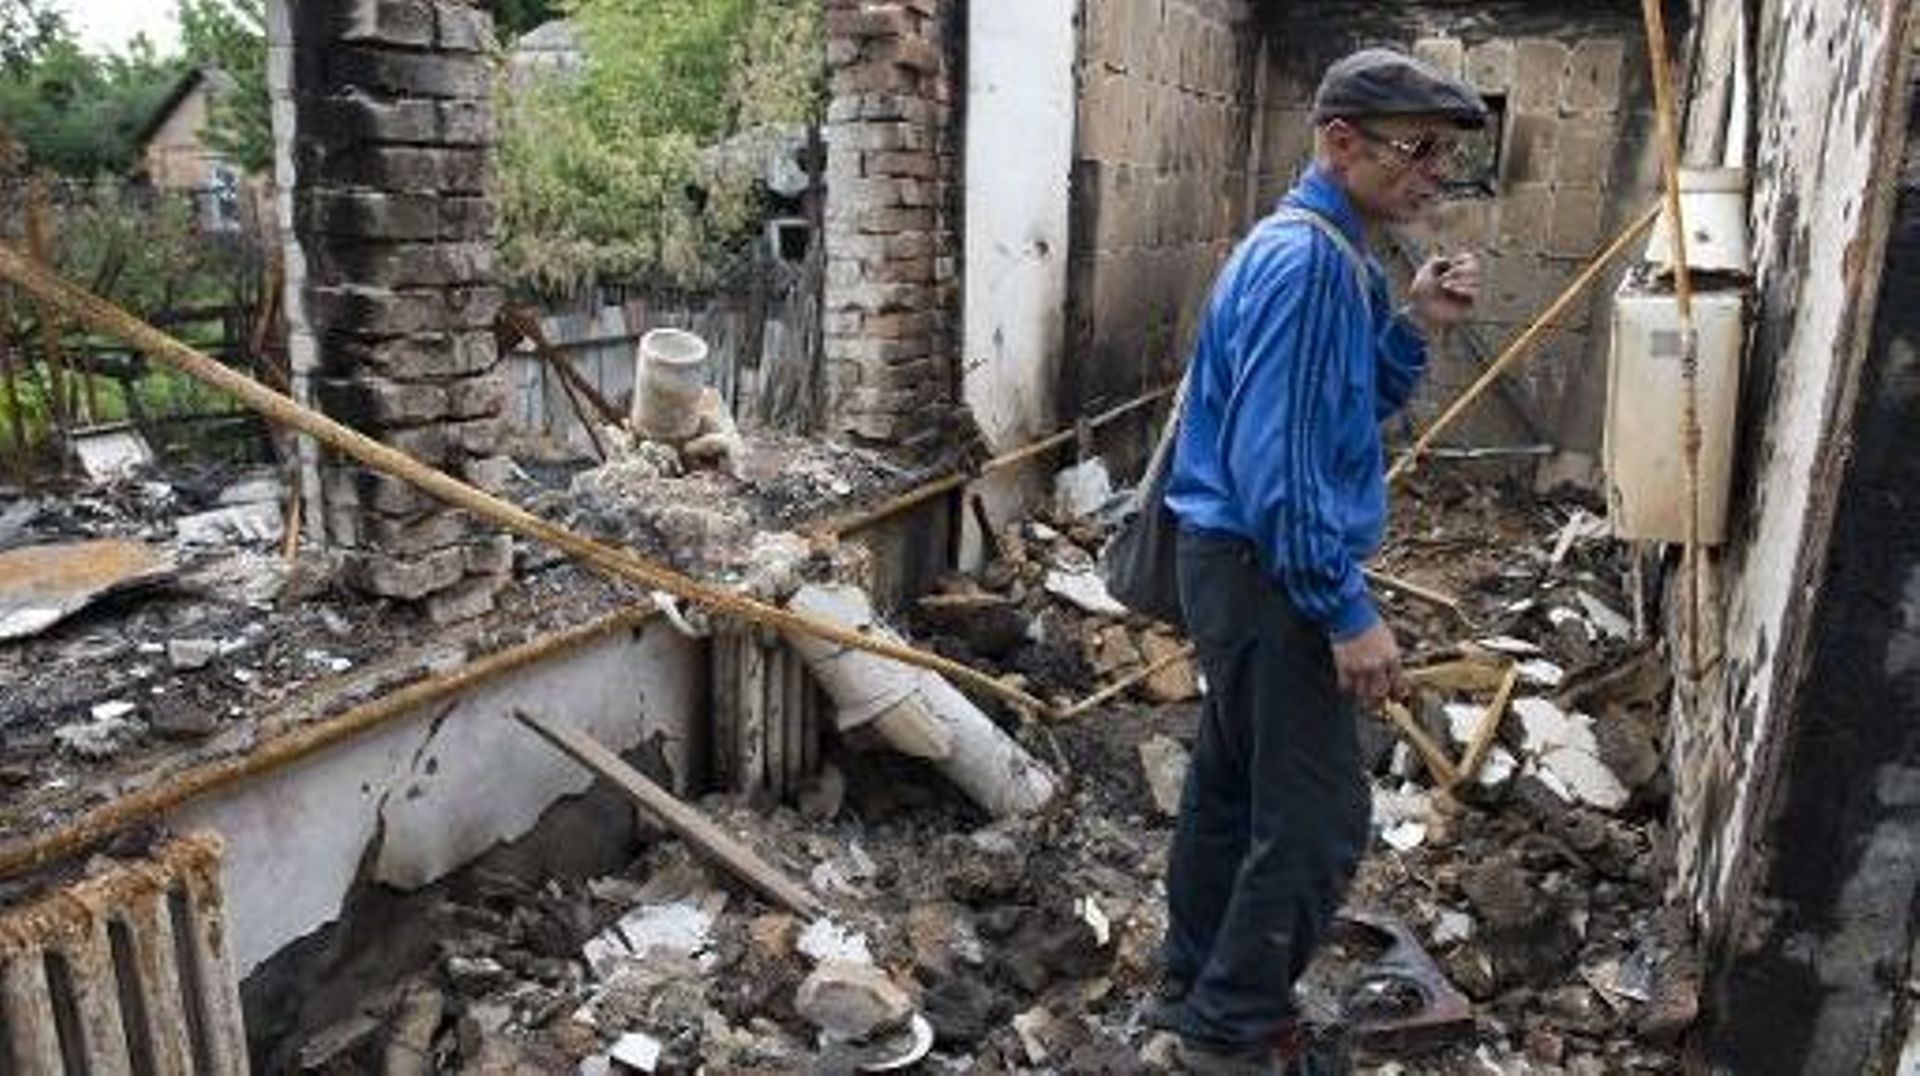 Un homme dans sa maison détruite par des obus à Slaviansk, dans l'est de l'Ukraine, le 24 juin 2014